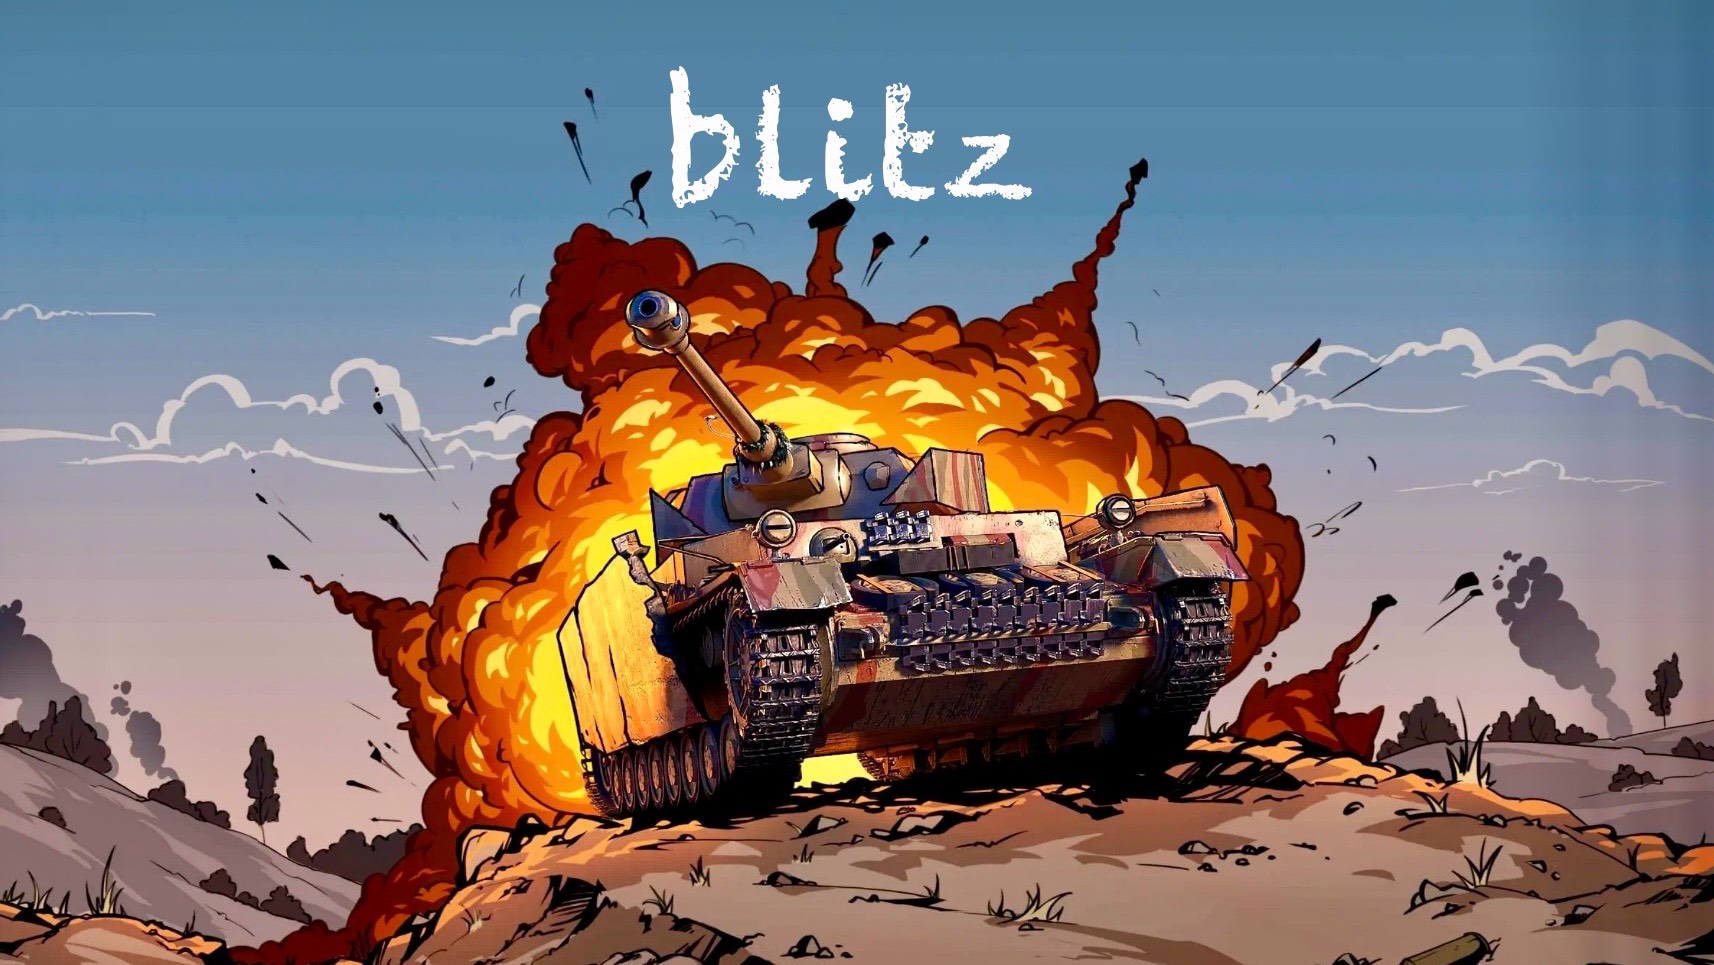 Tank blitz